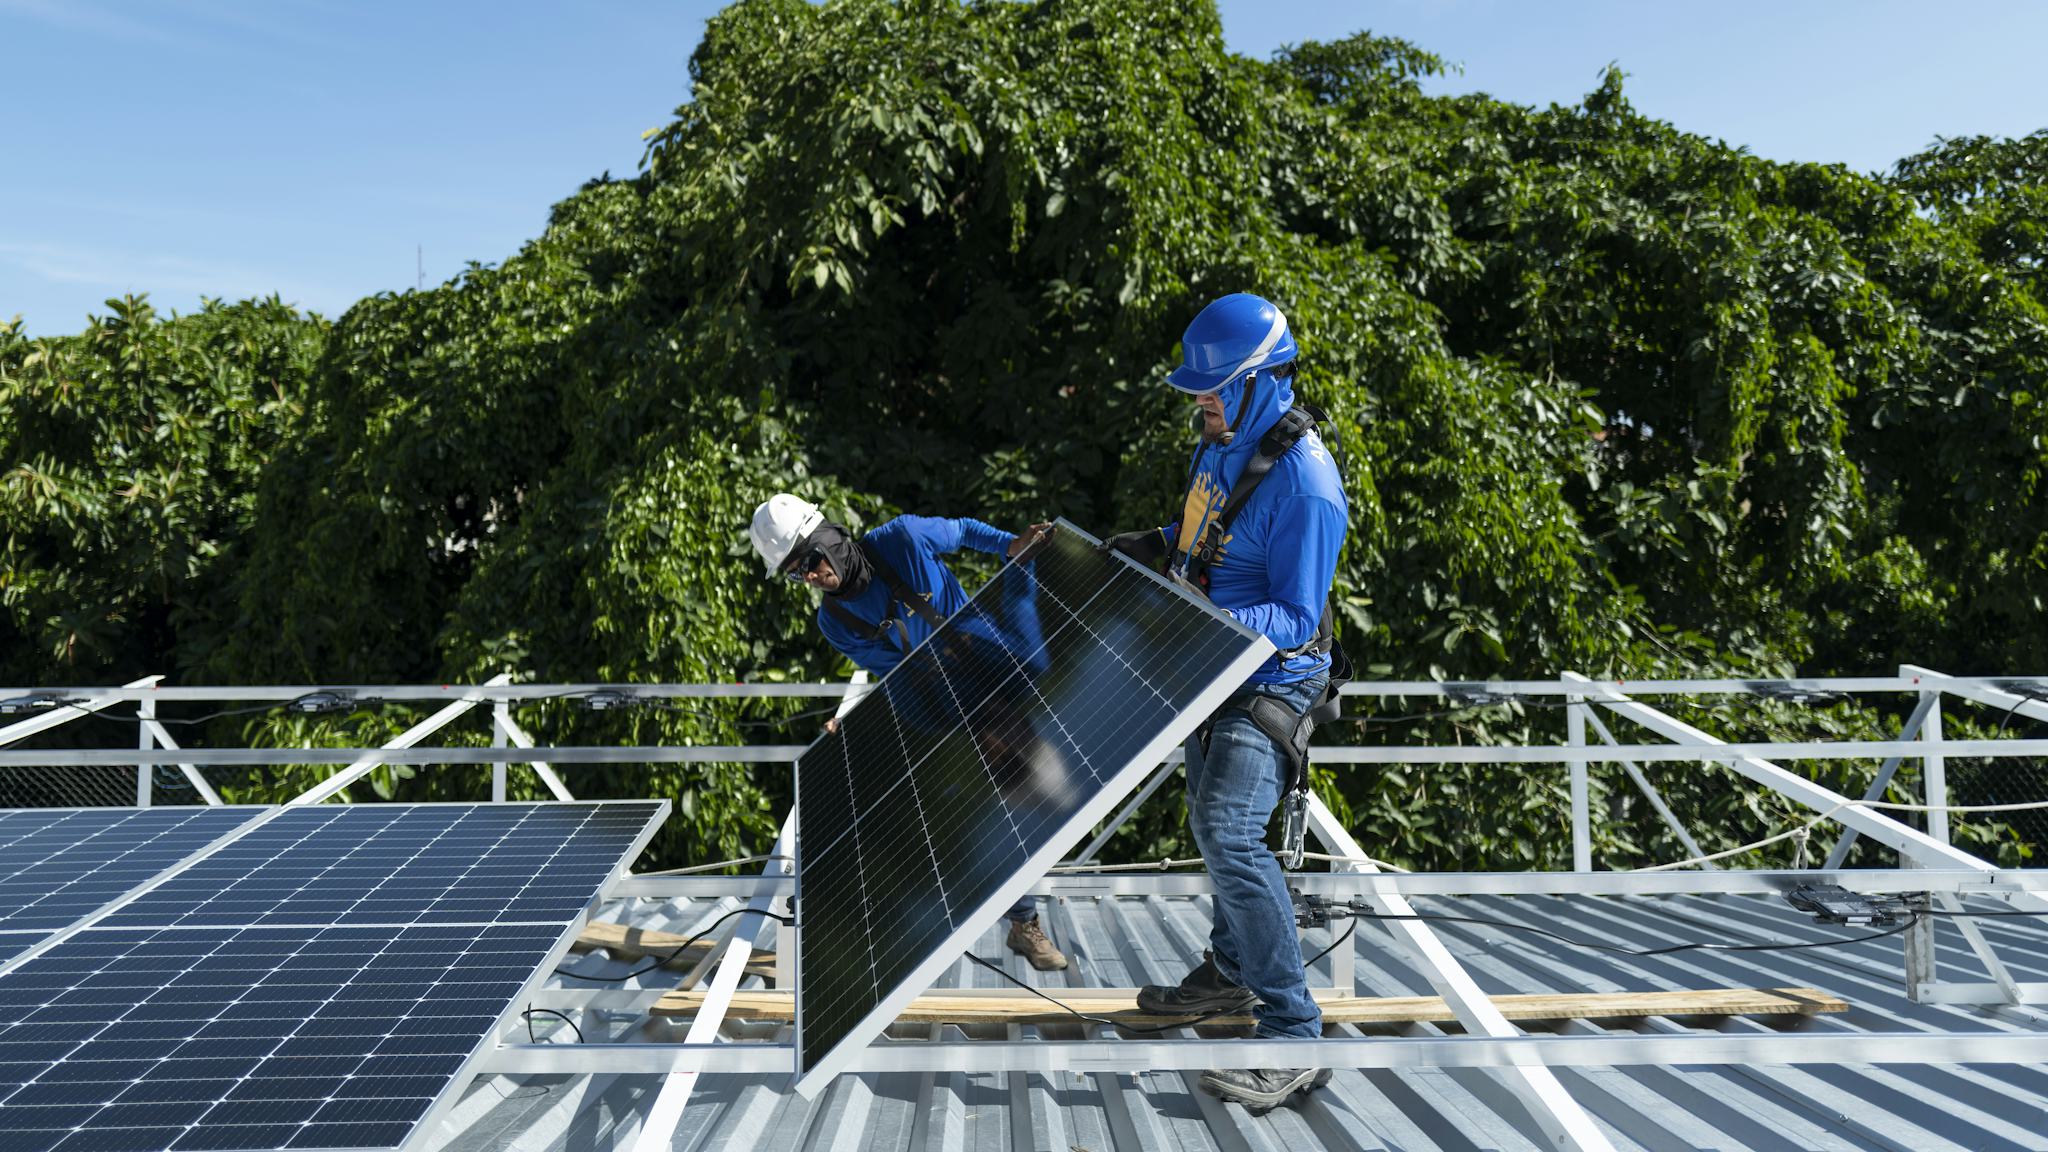 Två arbetare som installerar solpaneler på ett metalltak med träd i bakgrunden.